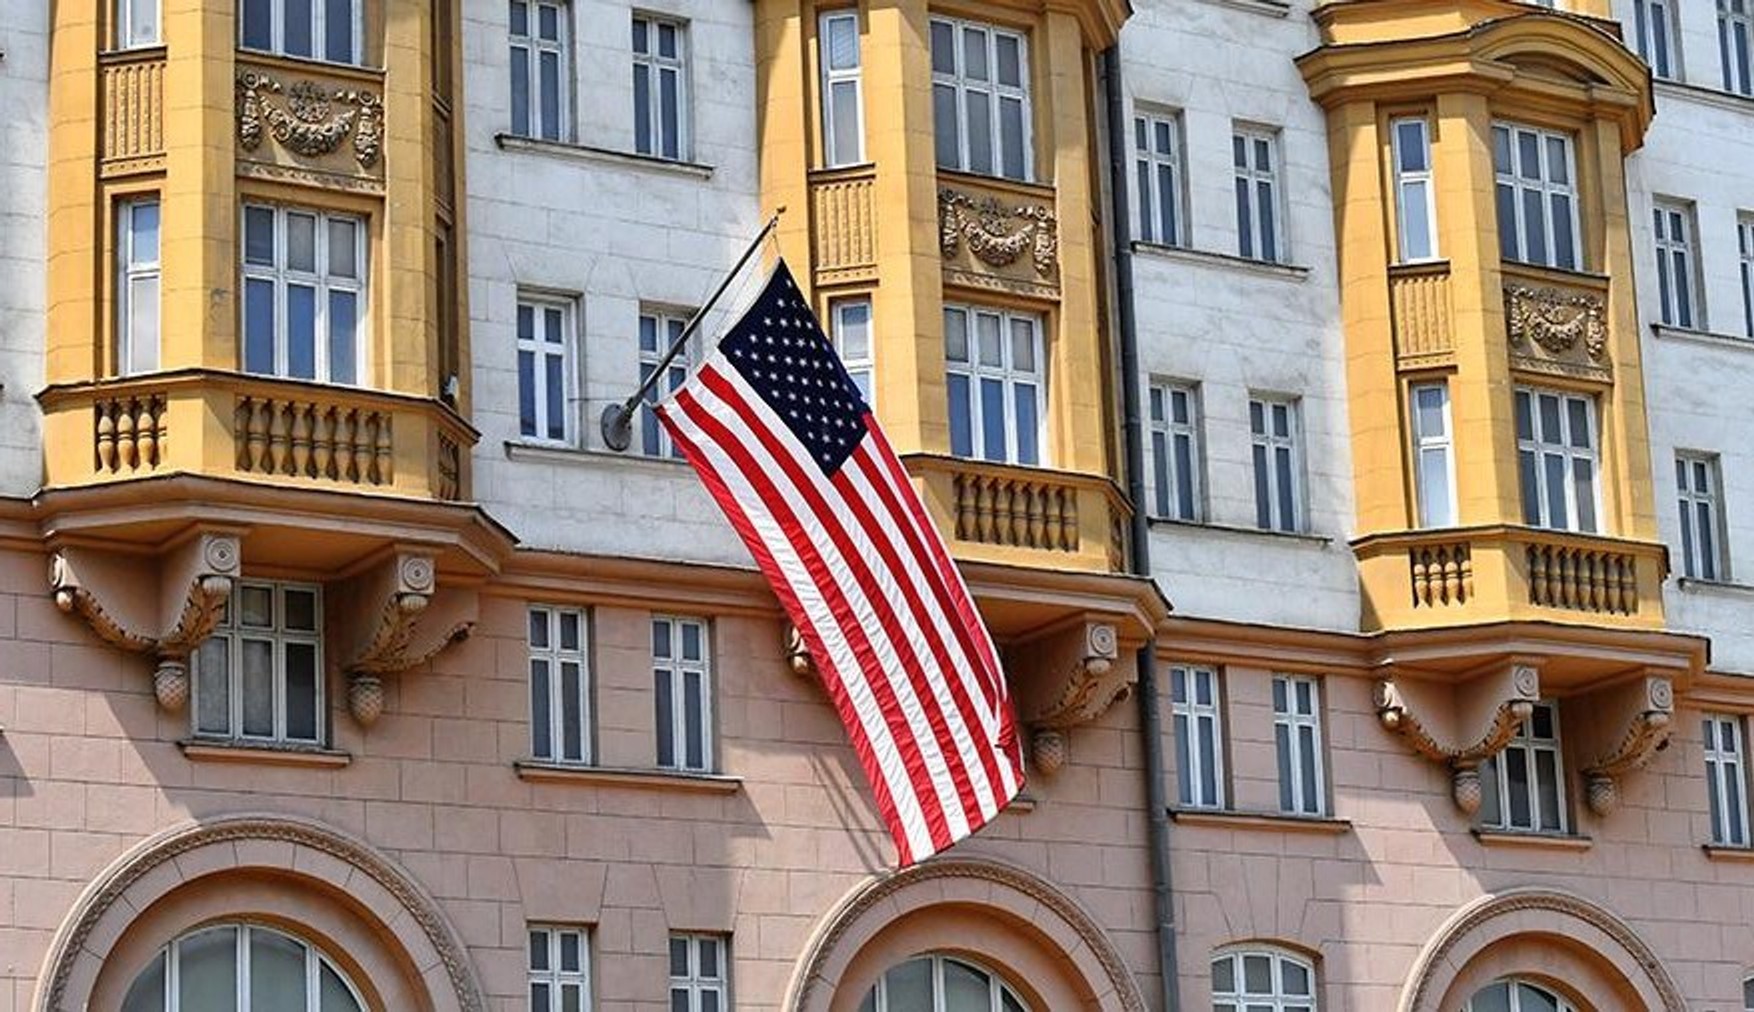 Посол Росії в Вашингтоні Антонов заявив, що Росія і США скоро відновлять діалог про візи